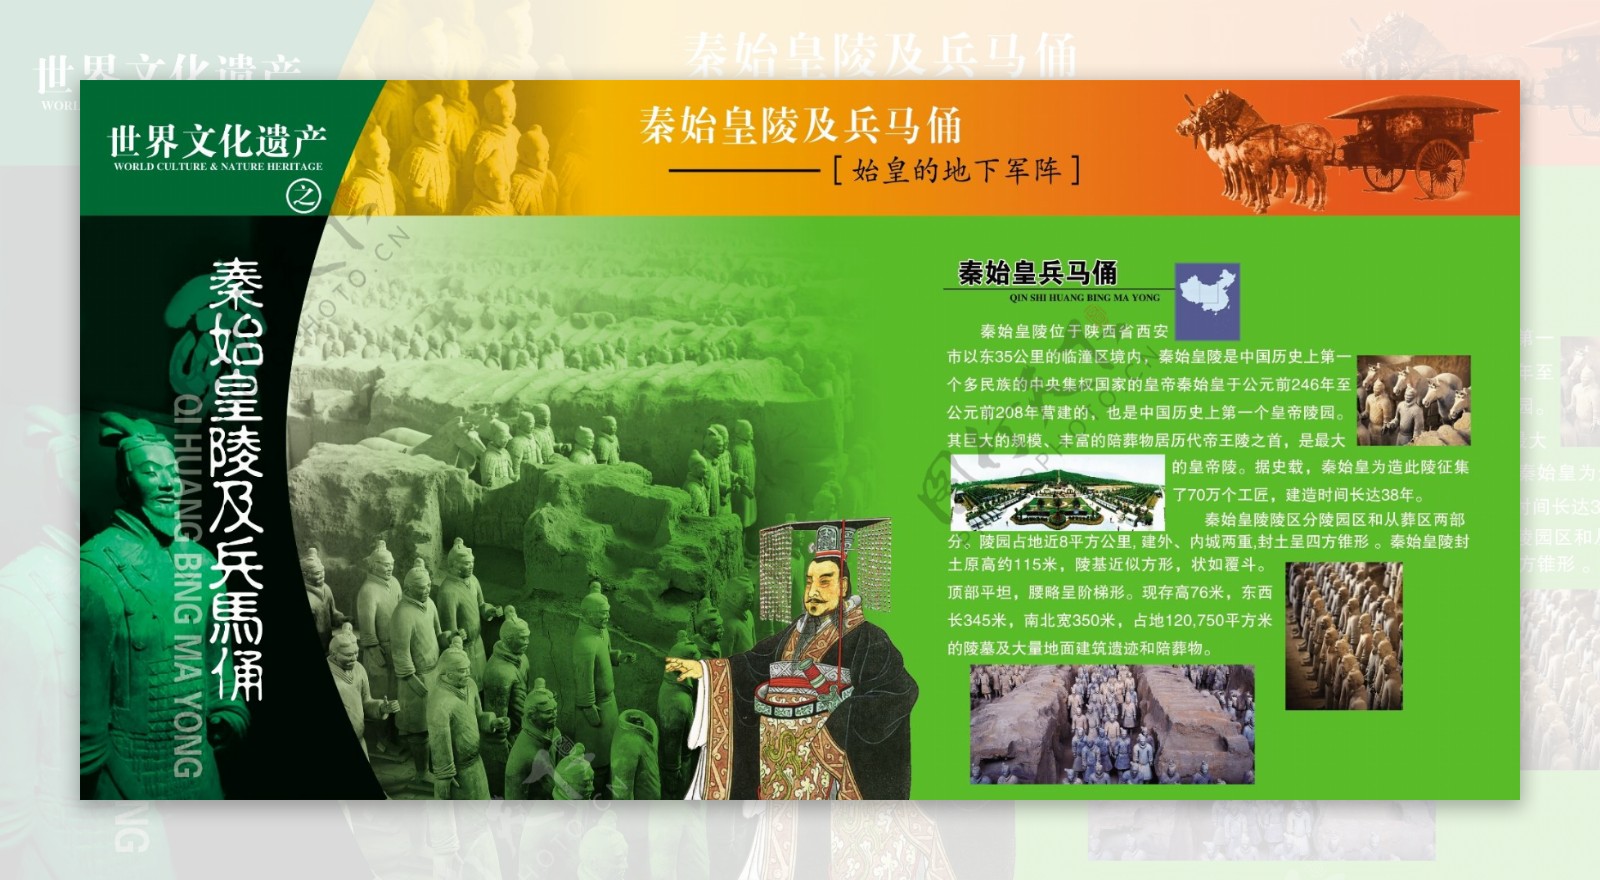 世界文化遗产秦始皇陵及兵马俑图片